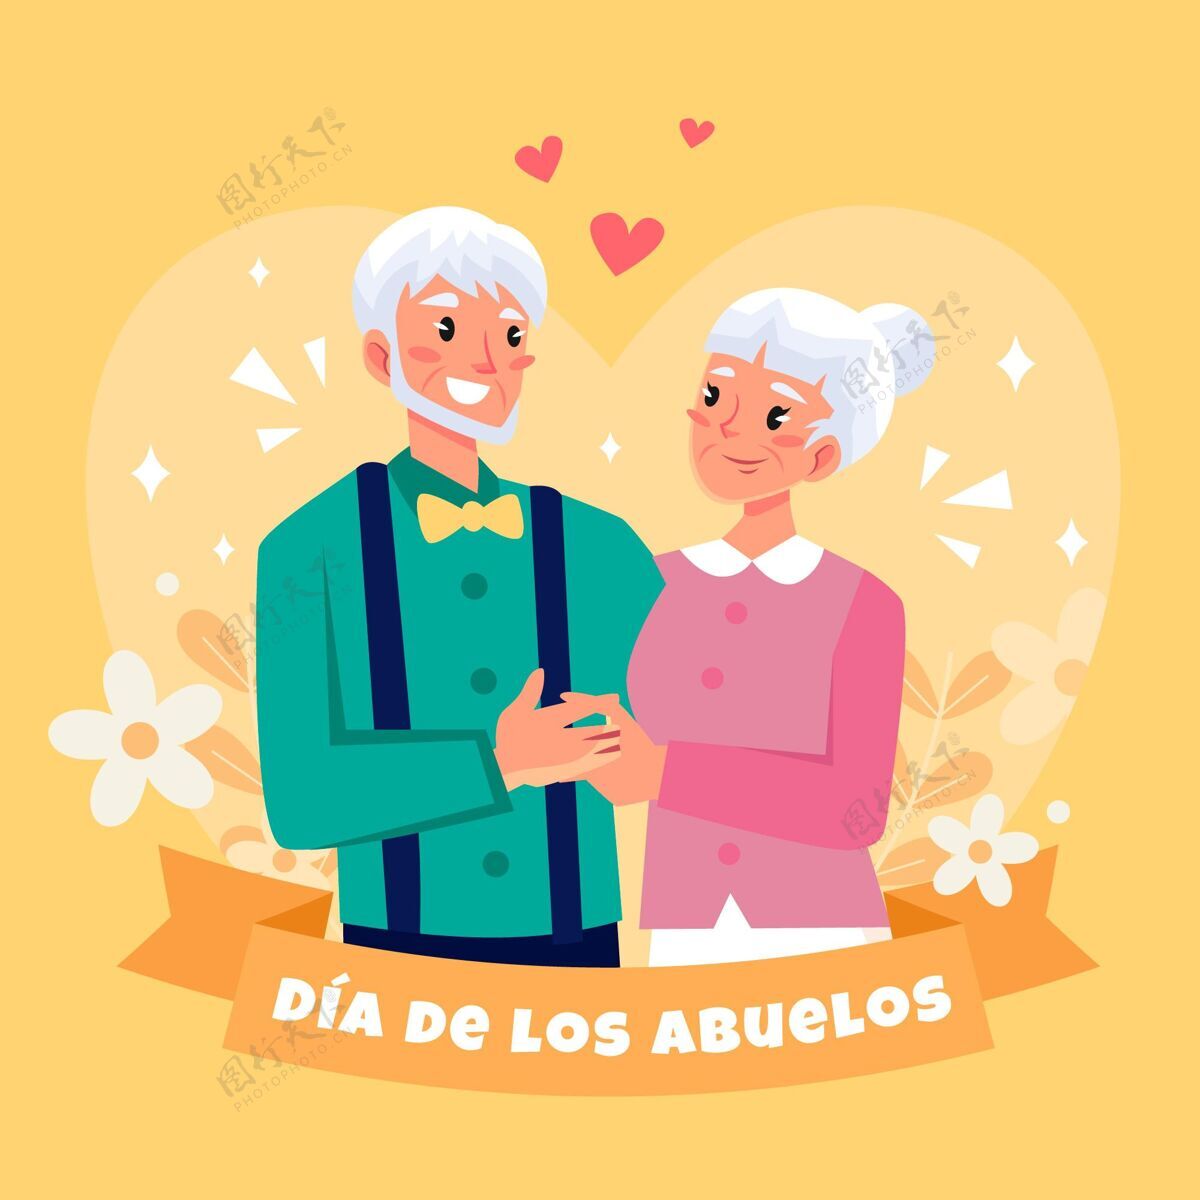 迪亚多斯阿沃斯Diadelosabuelos爷爷奶奶的插图祖父母手绘祖父母节